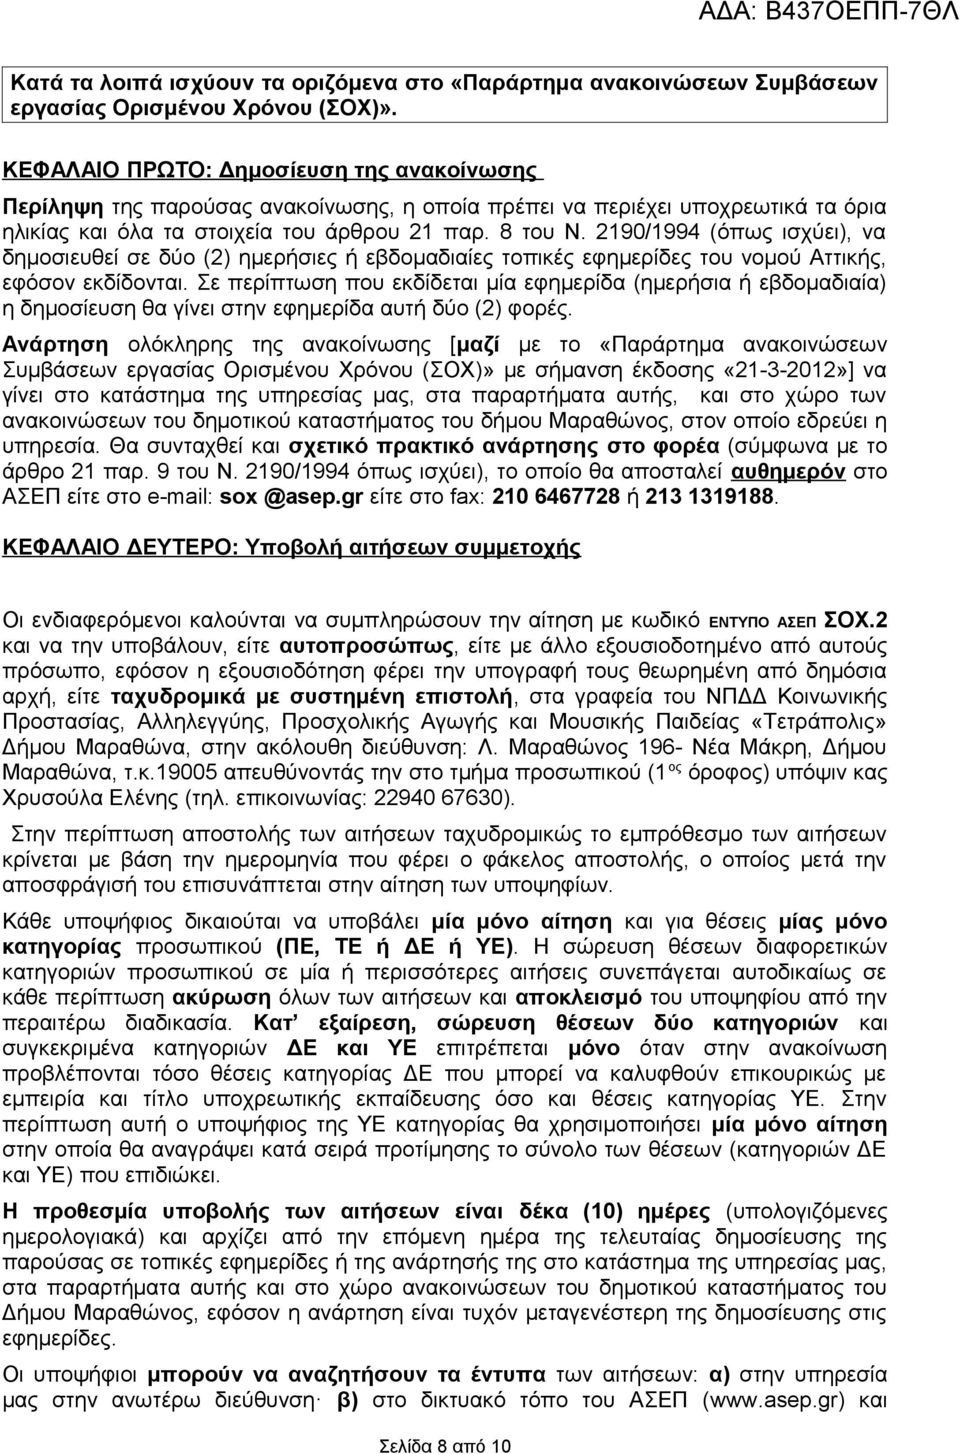 290/994 (όπως ισχύει), να δημοσιευθεί σε δύο (2) ημερήσιες ή εβδομαδιαίες τοπικές εφημερίδες του νομού Αττικής, εφόσον εκδίδονται.